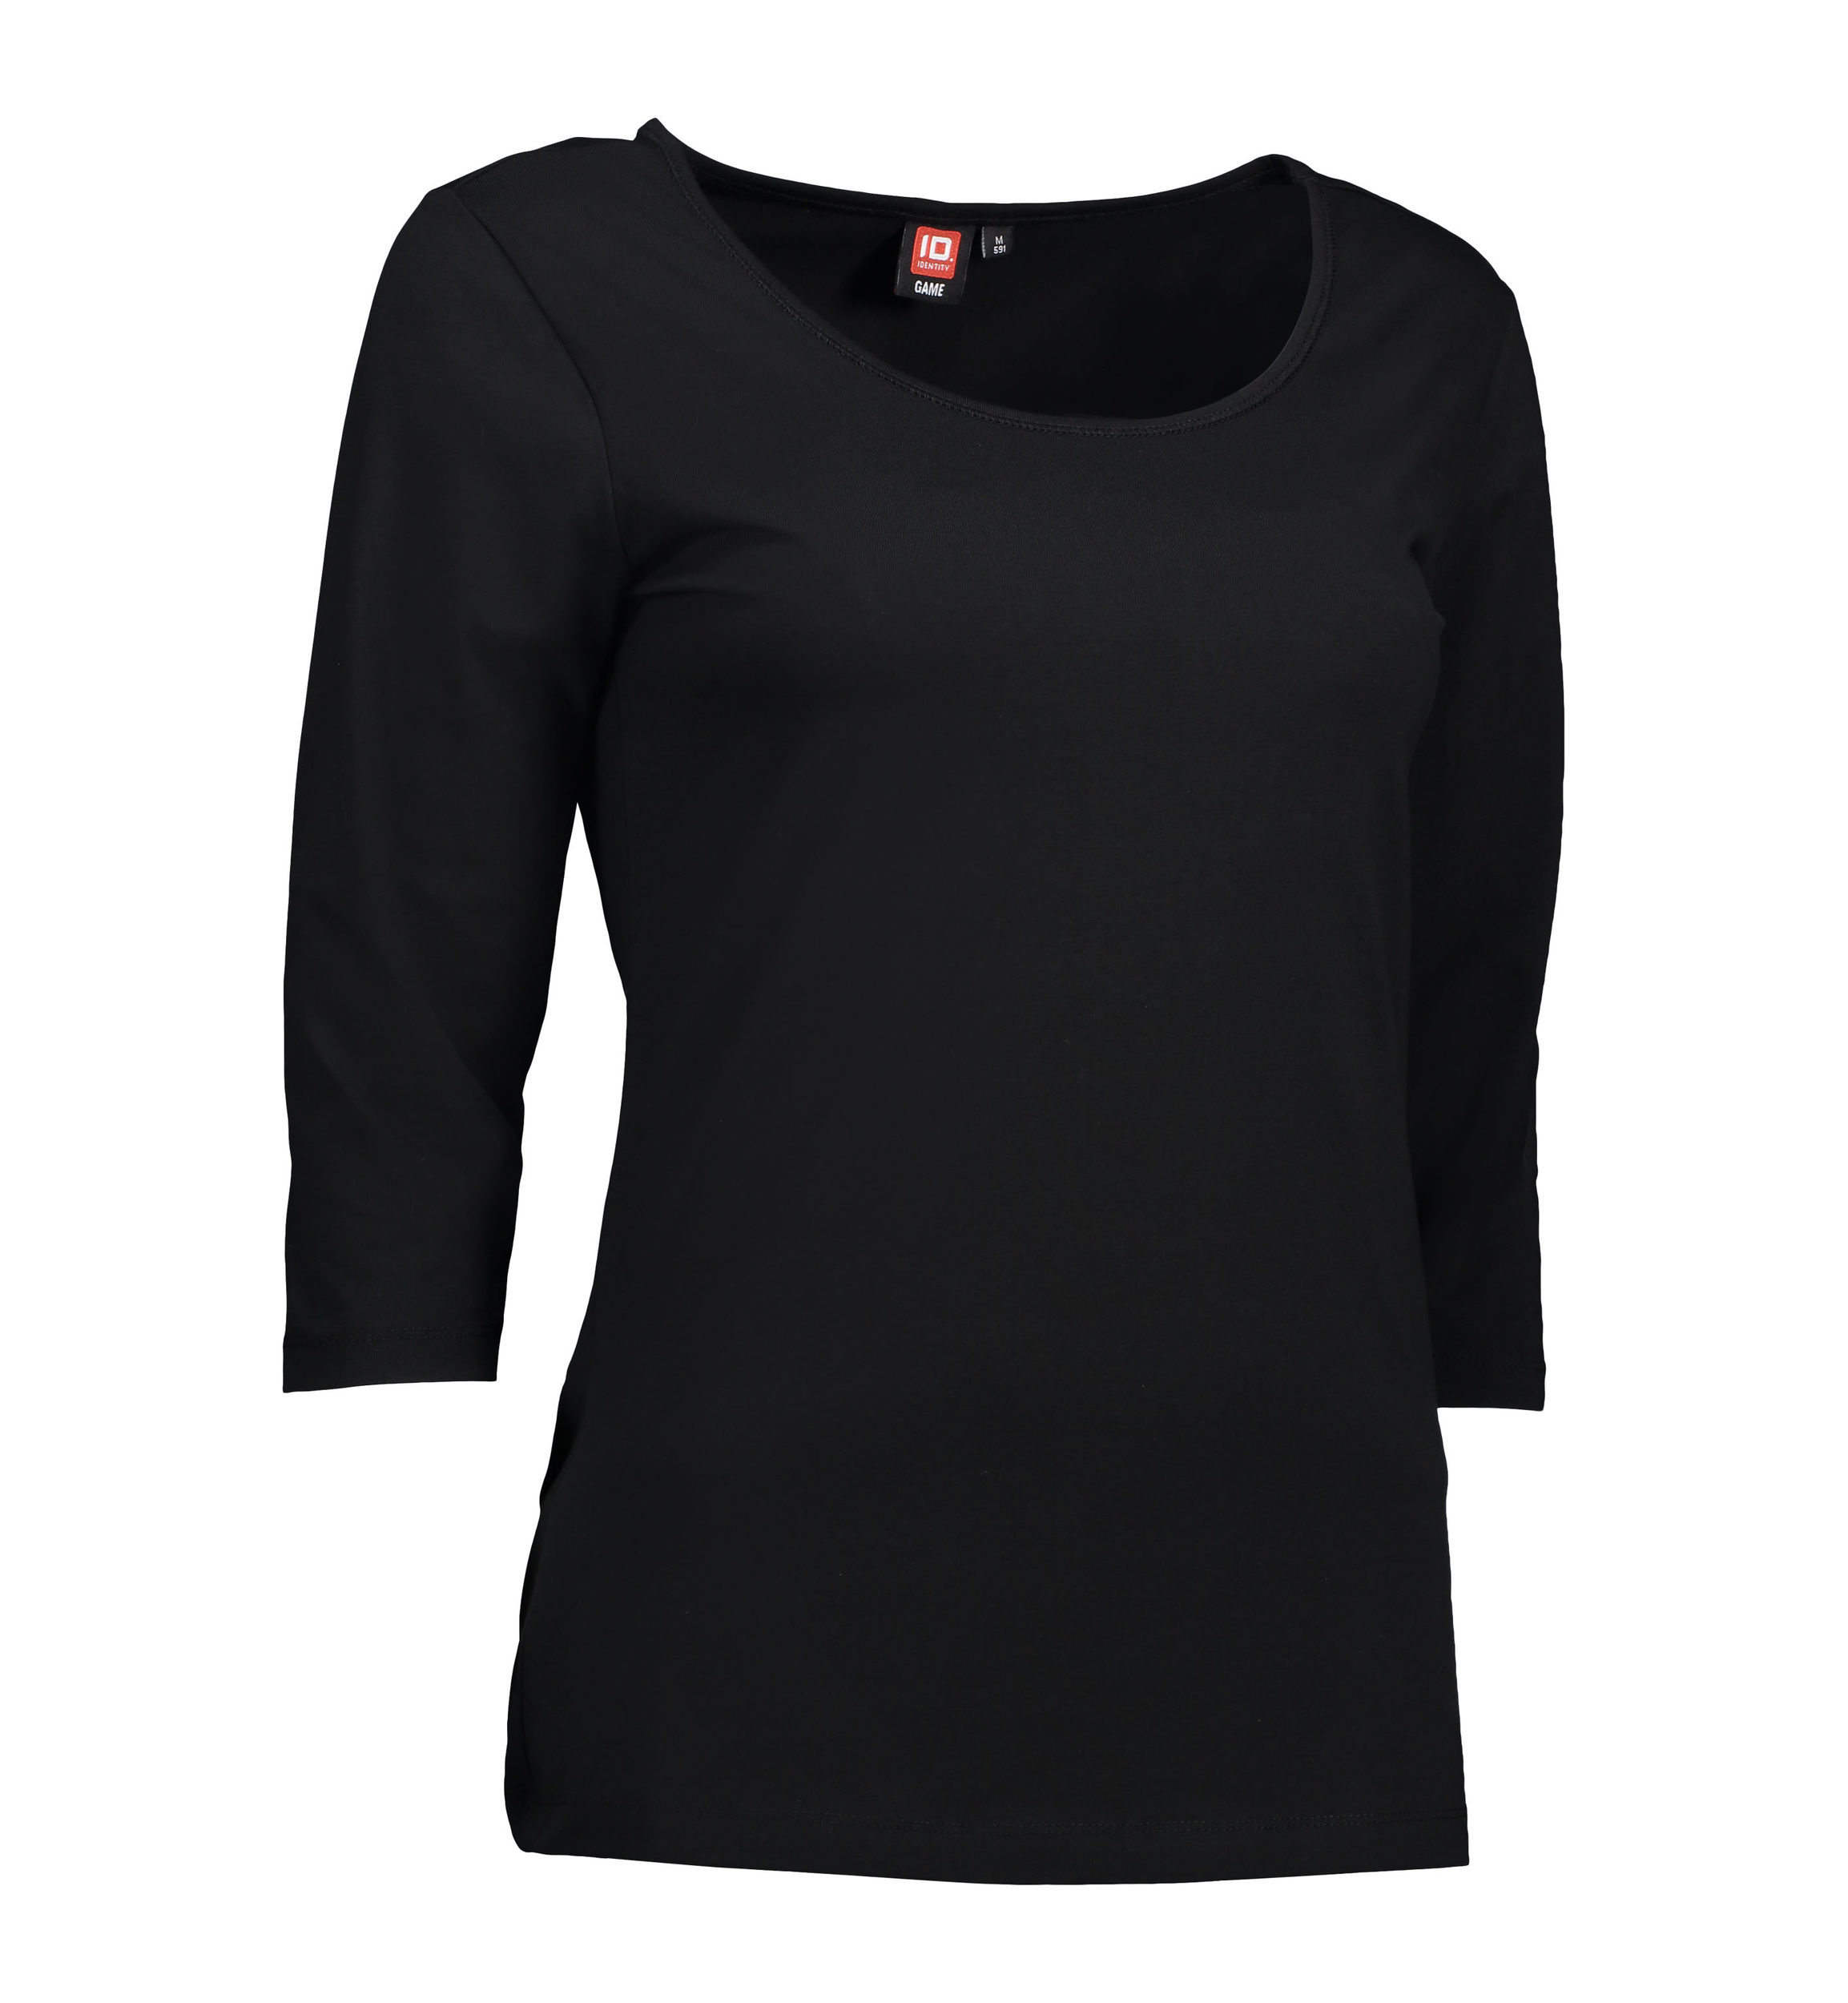 Se 3/4-ærmet dame t-shirt i sort - 2XL hos Sygeplejebutikken.dk